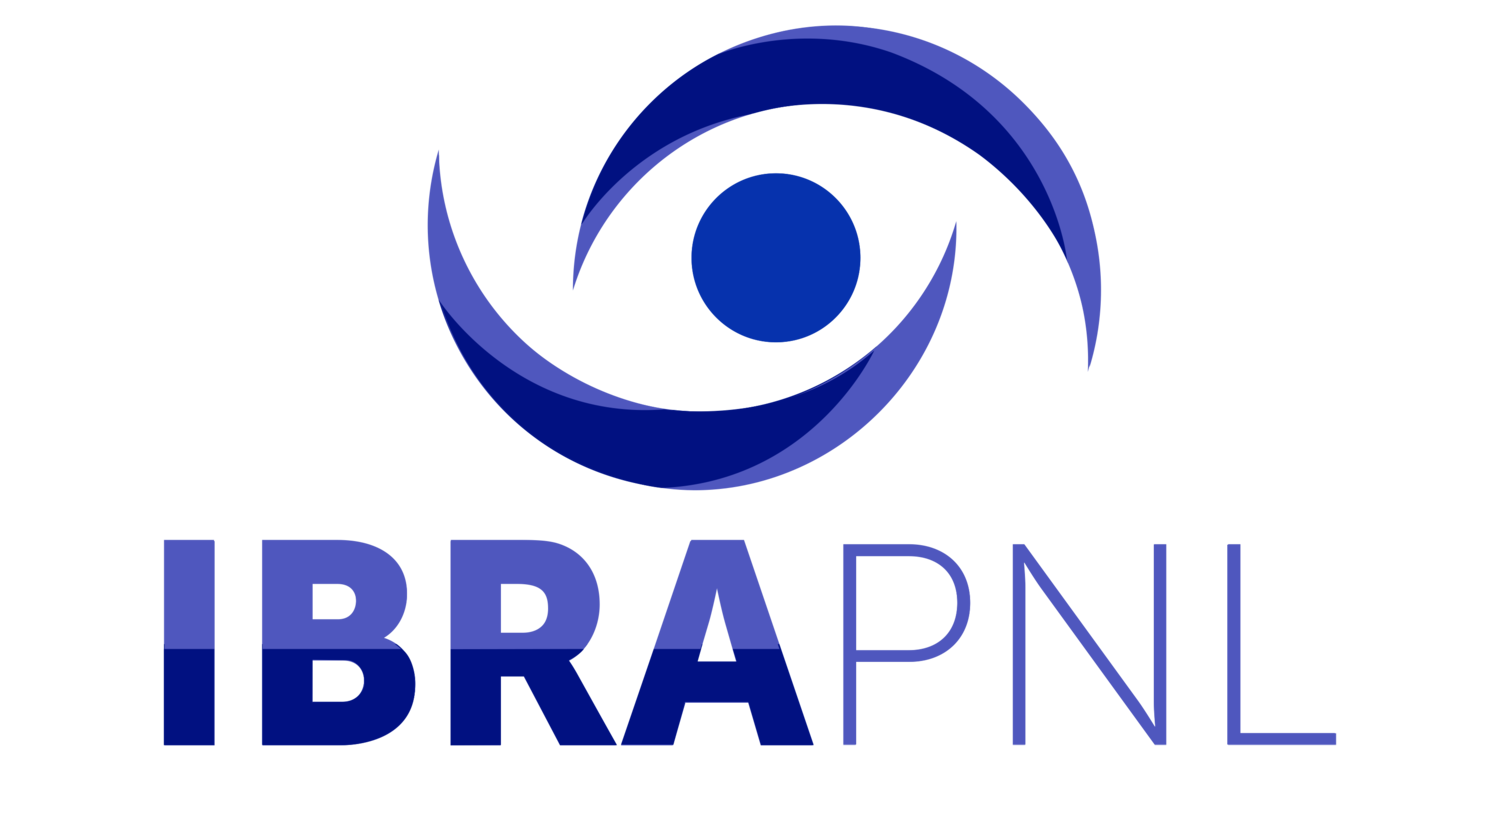 IBRAPNL — Instituto Brasileiro de Programação Neurolinguística